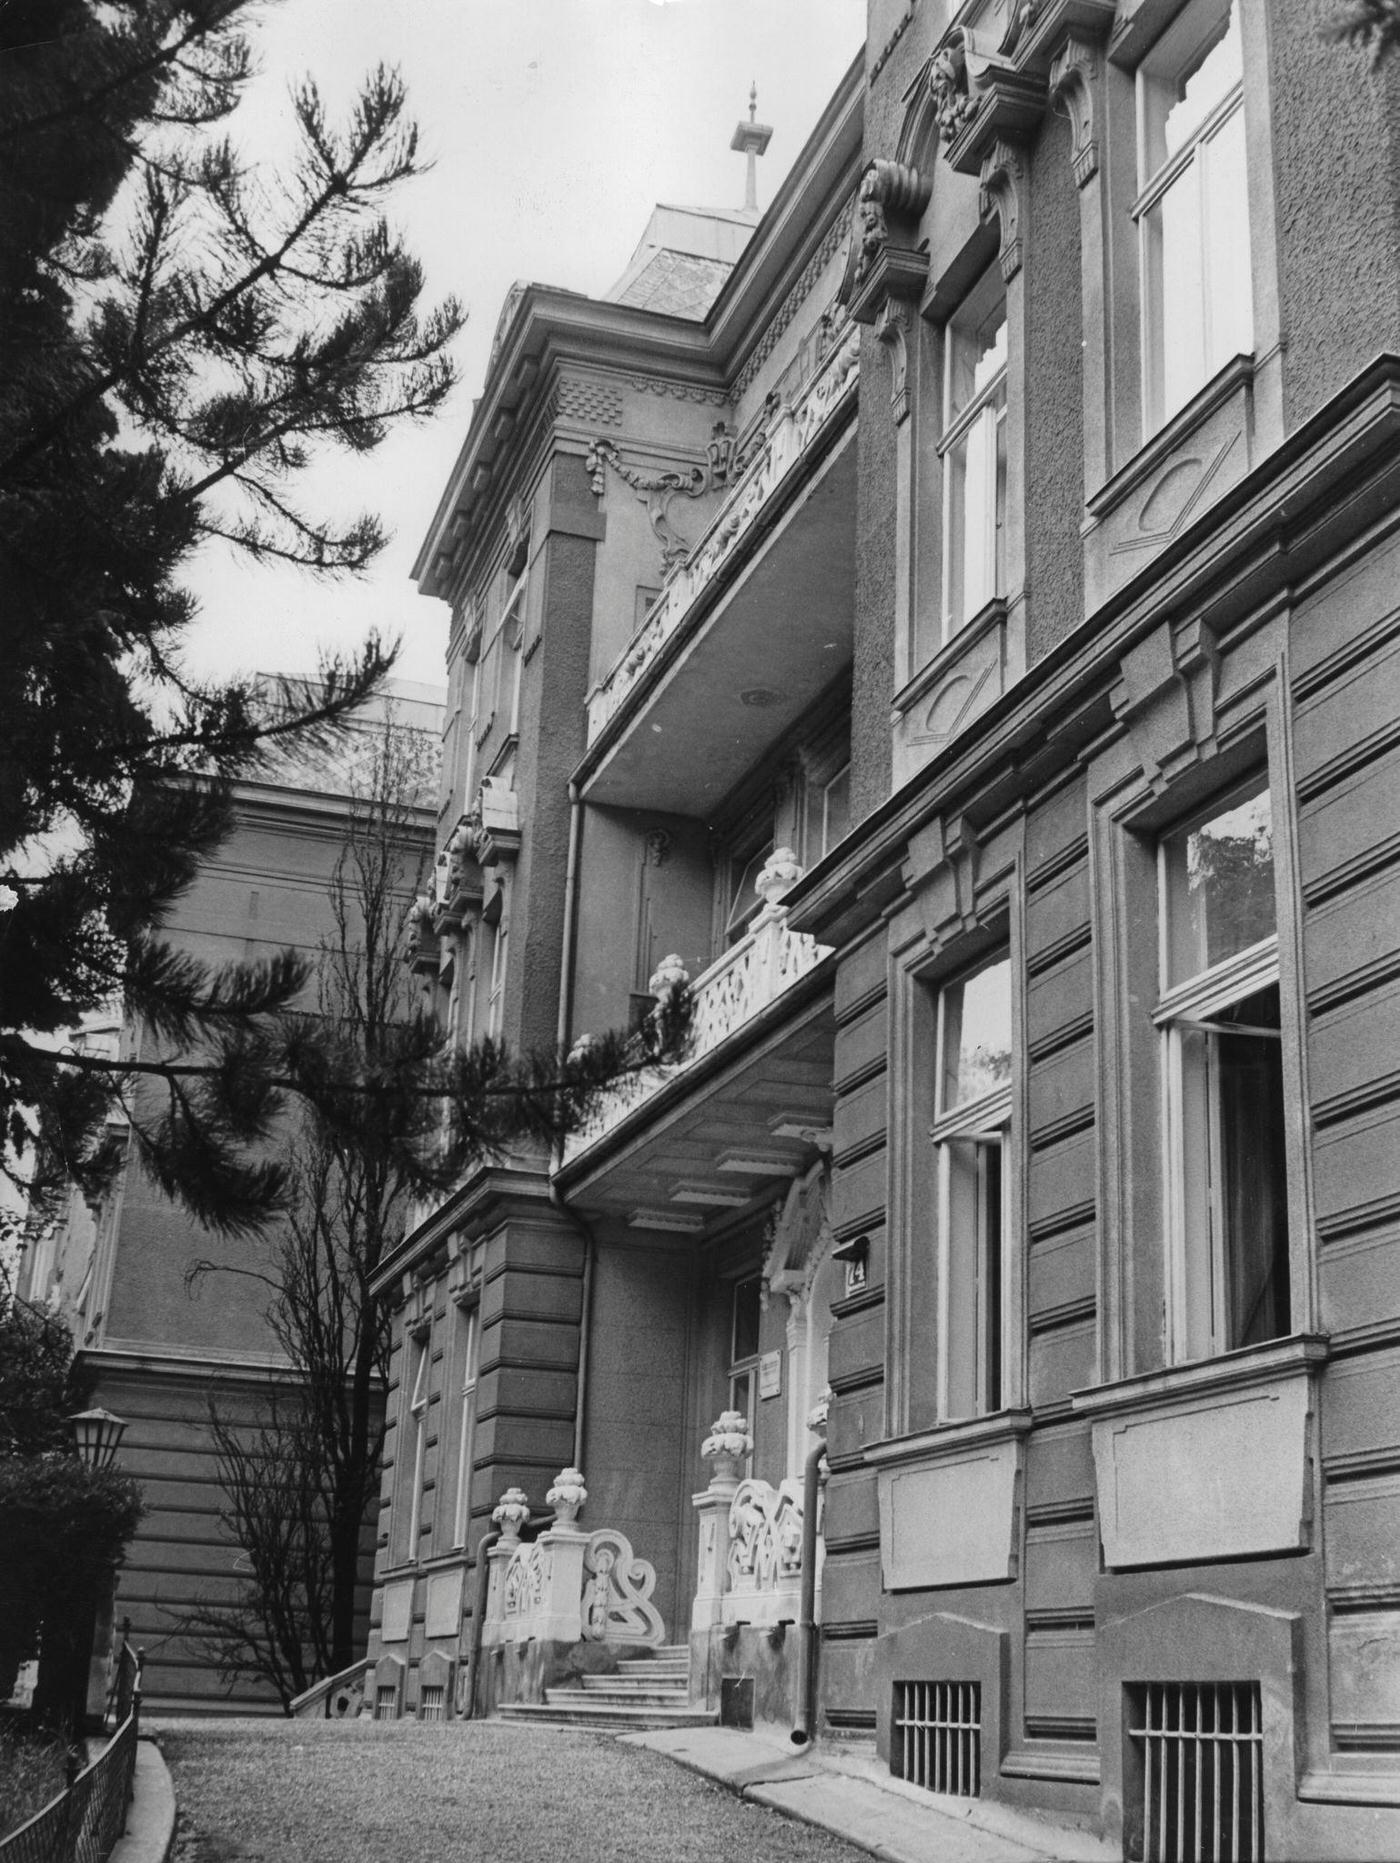 The Viennese Cottage Sanatorium, built in 1908, located at Sternwartestrasse 74 in Währing, Vienna in 1956.